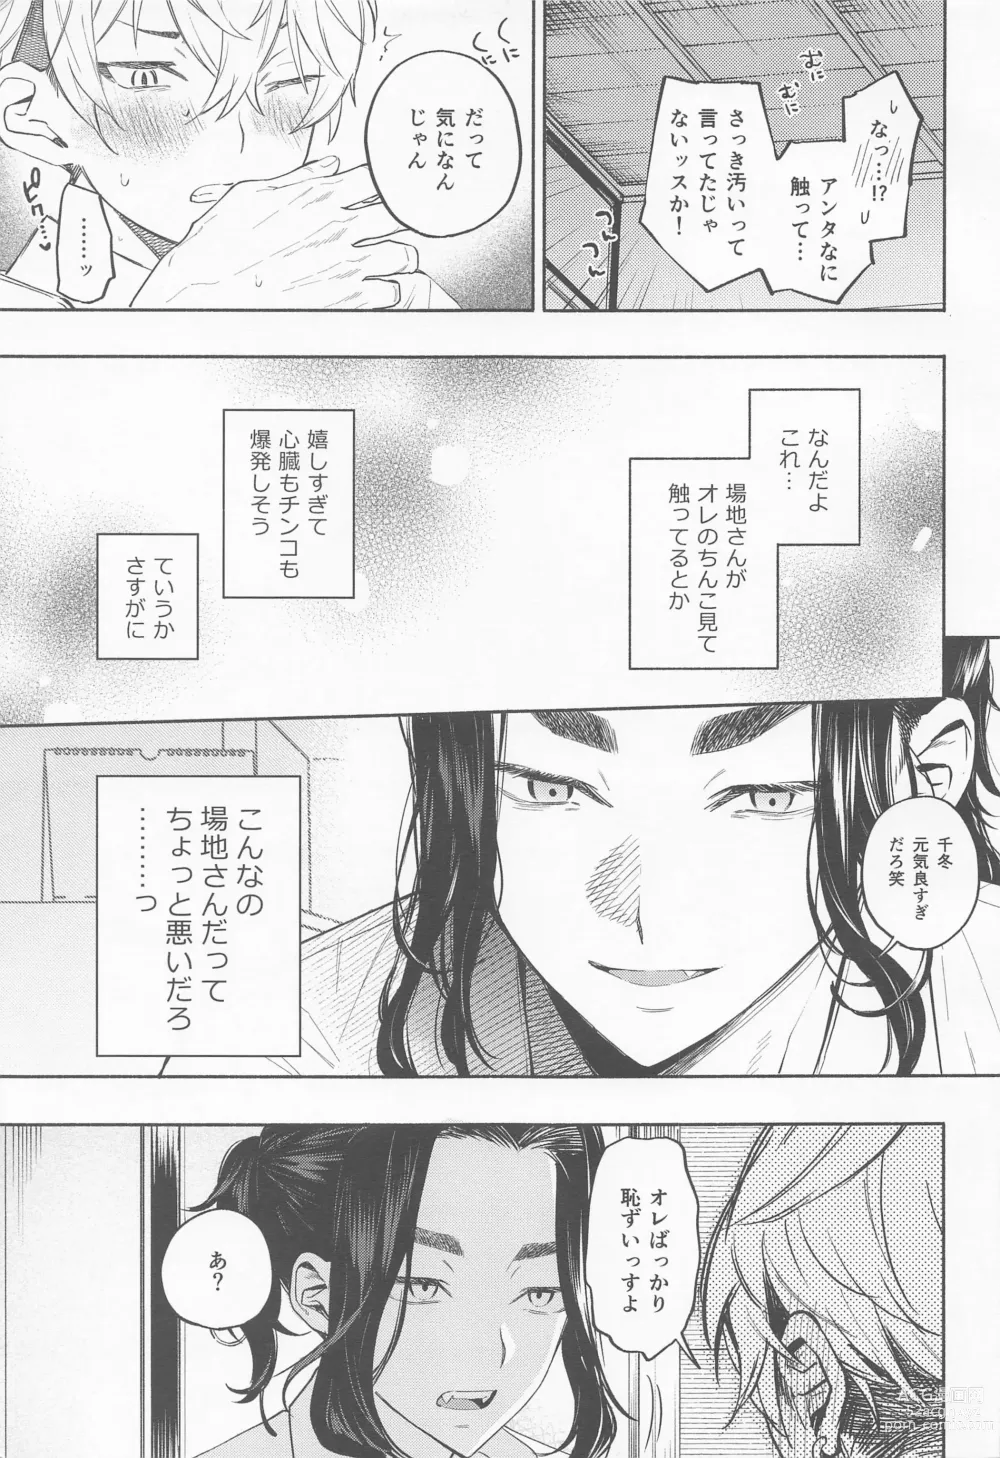 Page 20 of doujinshi Genjitsu wa, masturbation yori Kimochi  - reality feels better than masturbation